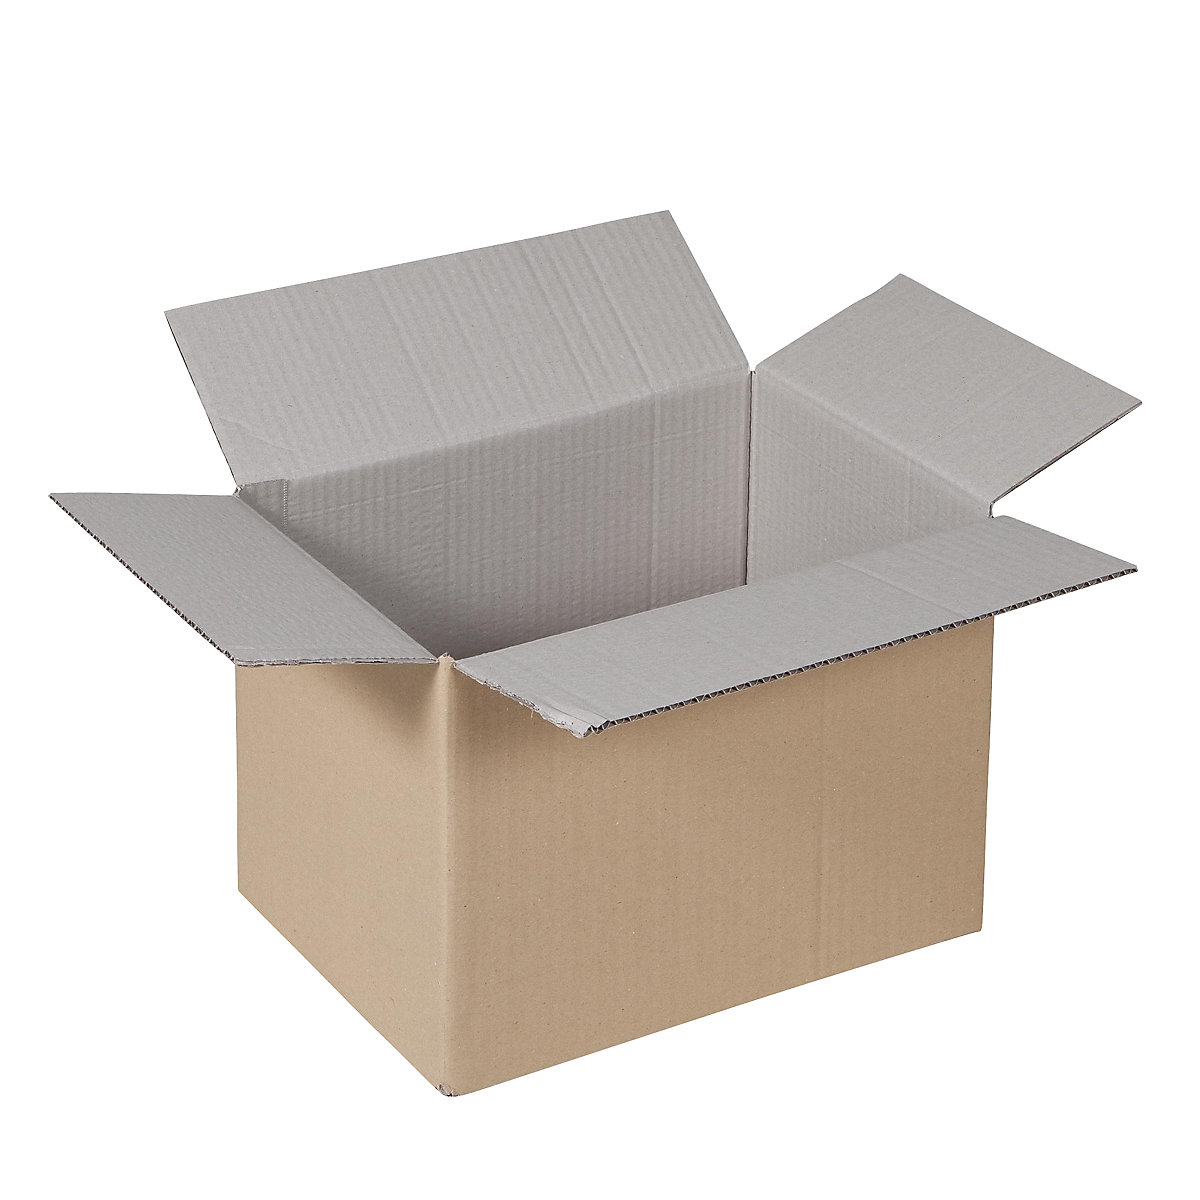 Sklopiva kartonska kutija, FEFCO 0201, od 1-valnog kartona, unutarnje dimenzije 350 x 230 x 240 mm, pak. 100 kom.-38